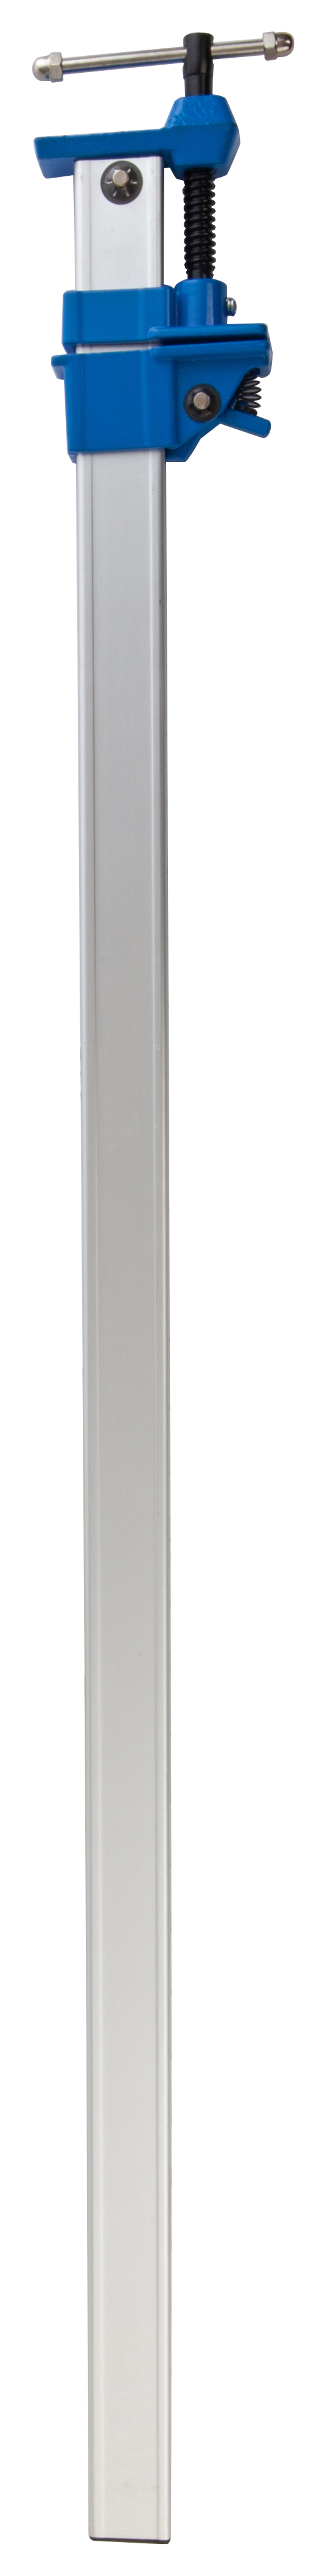 Image of Wickes Aluminium Sash Clamp - 35in / 900mm